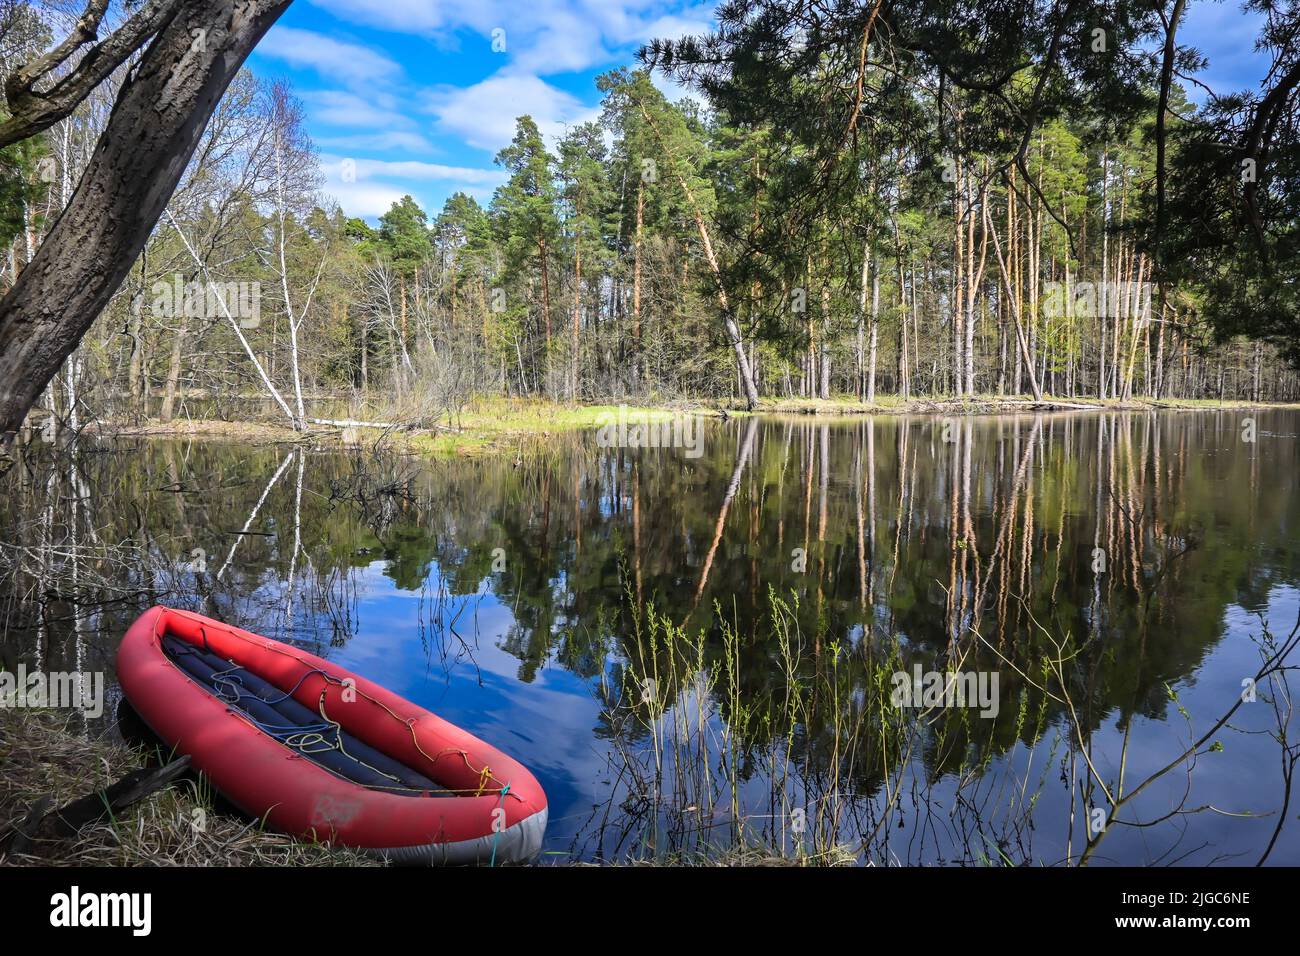 Kayak gonflable rouge près de la rive de la rivière forestière. Promenade printanière jusqu'au parc national. Banque D'Images